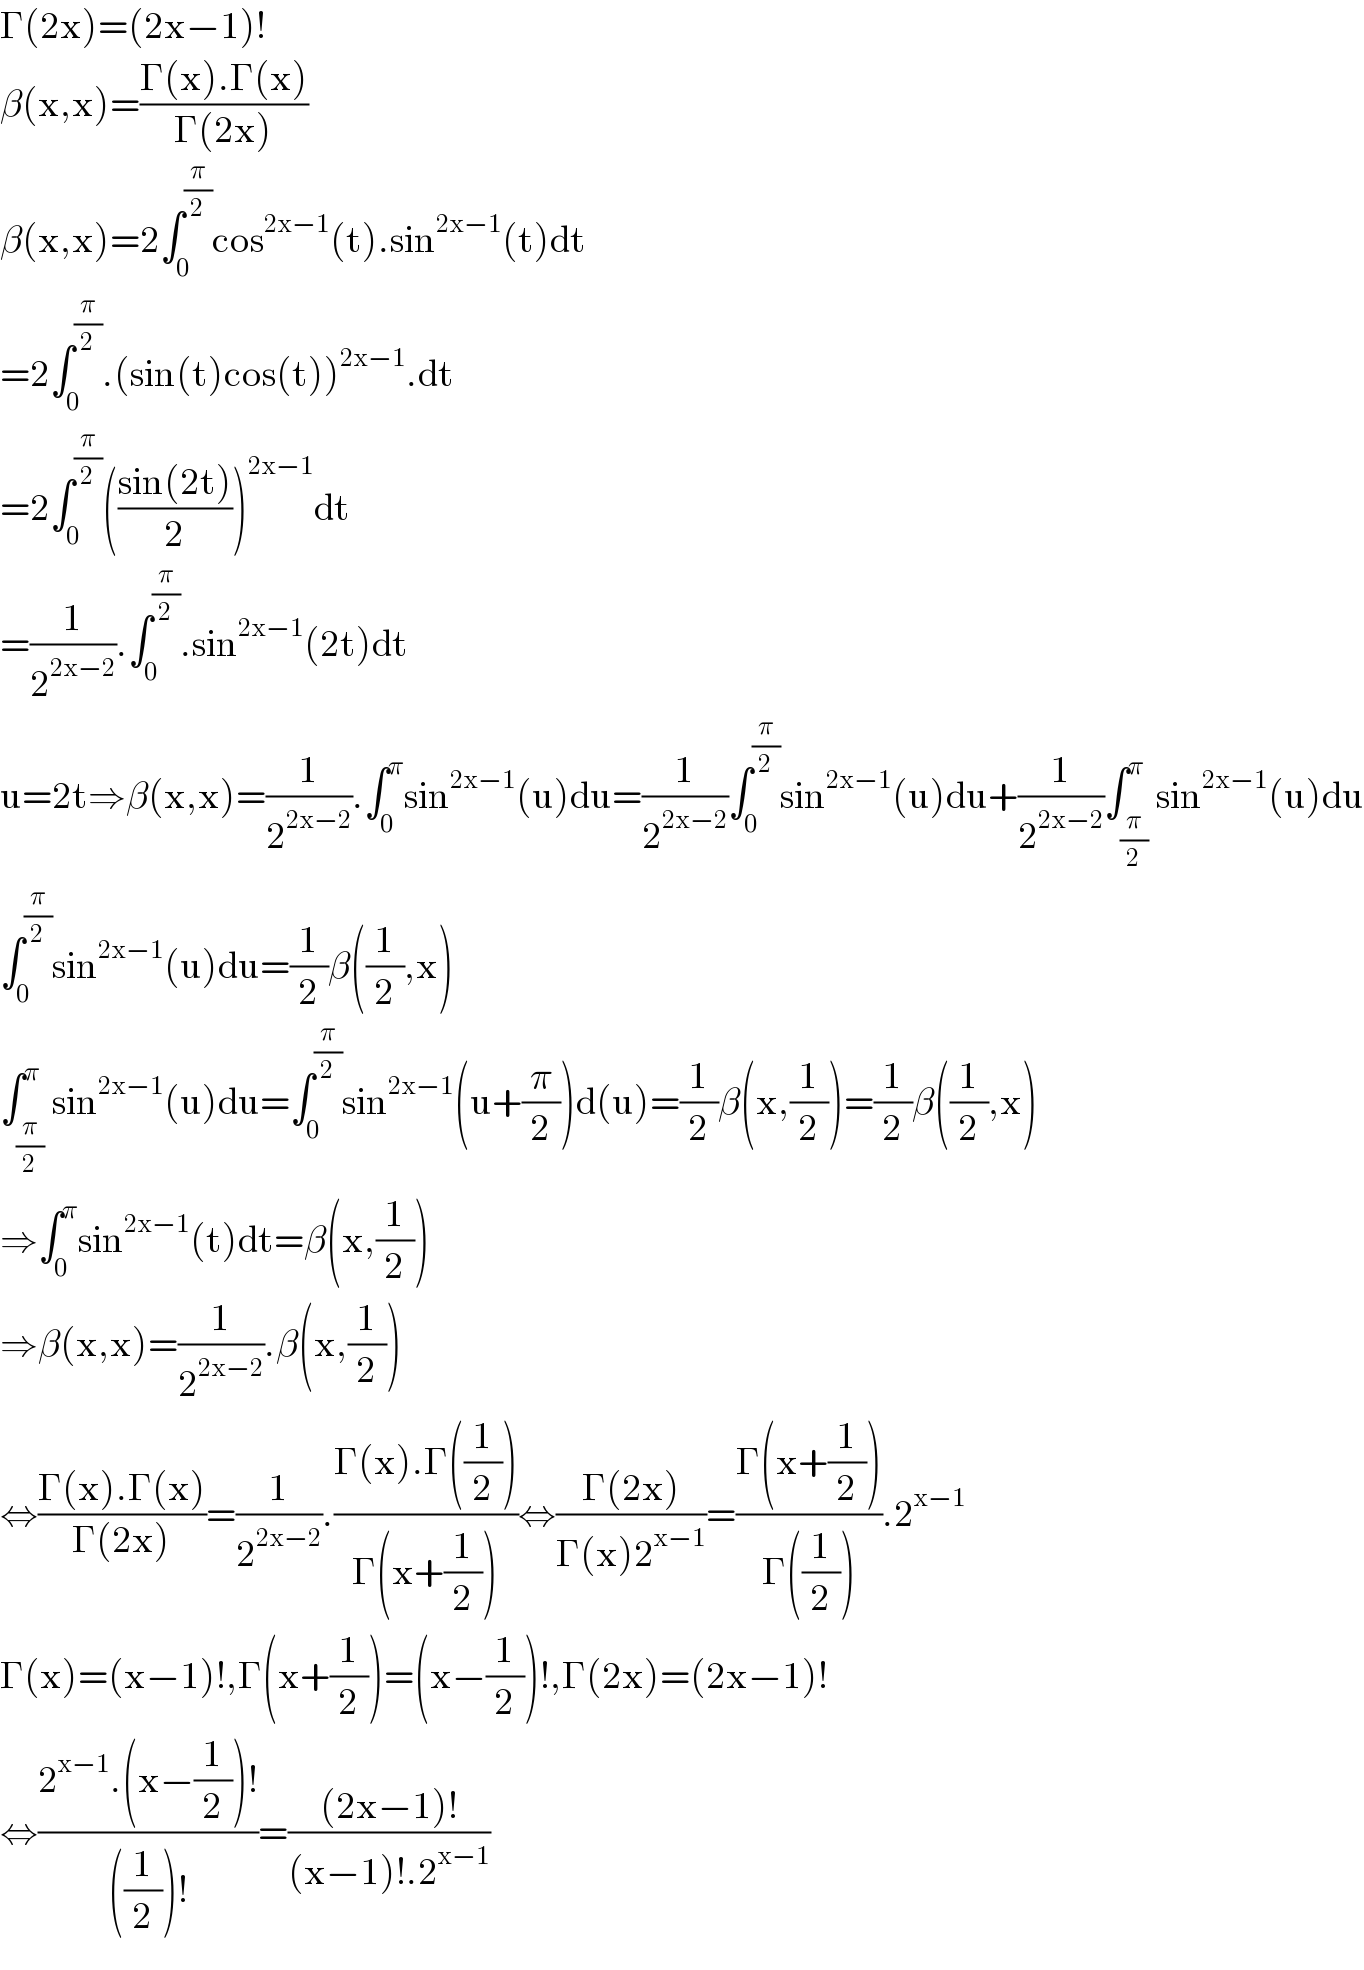 Γ(2x)=(2x−1)!  β(x,x)=((Γ(x).Γ(x))/(Γ(2x)))  β(x,x)=2∫_0 ^(π/2) cos^(2x−1) (t).sin^(2x−1) (t)dt  =2∫_0 ^(π/2) .(sin(t)cos(t))^(2x−1) .dt  =2∫_0 ^(π/2) (((sin(2t))/2))^(2x−1) dt  =(1/2^(2x−2) ).∫_0 ^(π/2) .sin^(2x−1) (2t)dt  u=2t⇒β(x,x)=(1/2^(2x−2) ).∫_0 ^π sin^(2x−1) (u)du=(1/2^(2x−2) )∫_0 ^(π/2) sin^(2x−1) (u)du+(1/2^(2x−2) )∫_(π/2) ^π sin^(2x−1) (u)du  ∫_0 ^(π/2) sin^(2x−1) (u)du=(1/2)β((1/2),x)  ∫_(π/2) ^π sin^(2x−1) (u)du=∫_0 ^(π/2) sin^(2x−1) (u+(π/2))d(u)=(1/2)β(x,(1/2))=(1/2)β((1/2),x)  ⇒∫_0 ^π sin^(2x−1) (t)dt=β(x,(1/2))  ⇒β(x,x)=(1/2^(2x−2) ).β(x,(1/2))  ⇔((Γ(x).Γ(x))/(Γ(2x)))=(1/2^(2x−2) ).((Γ(x).Γ((1/2)))/(Γ(x+(1/2))))⇔((Γ(2x))/(Γ(x)2^(x−1) ))=((Γ(x+(1/2)))/(Γ((1/2)))).2^(x−1)   Γ(x)=(x−1)!,Γ(x+(1/2))=(x−(1/2))!,Γ(2x)=(2x−1)!  ⇔((2^(x−1) .(x−(1/2))!)/(((1/2))!))=(((2x−1)!)/((x−1)!.2^(x−1) ))  